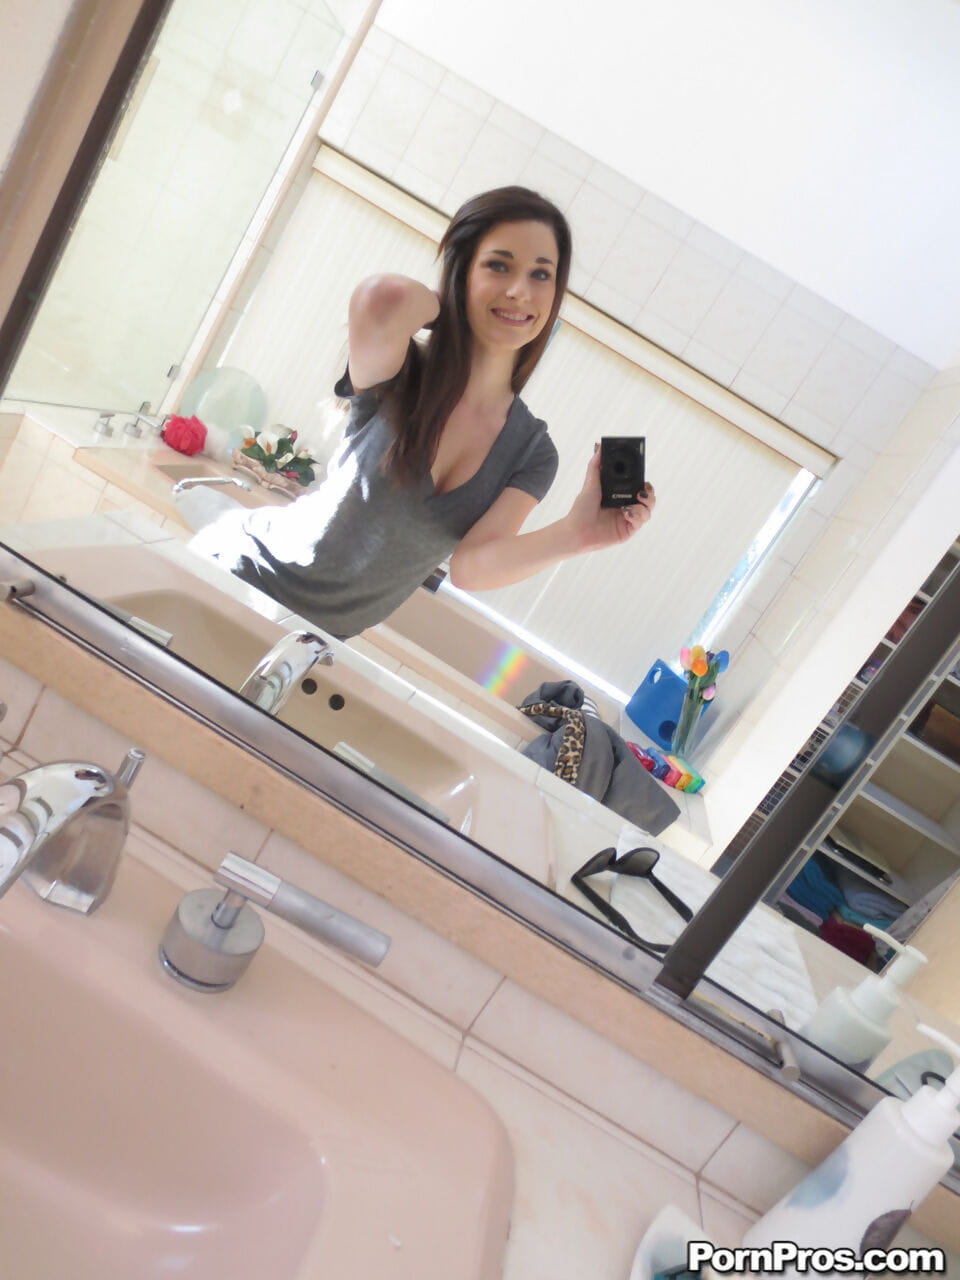 Lacey channing havasını onu doğal göğüsleri alır Çıplak ve Alır seksi selfies